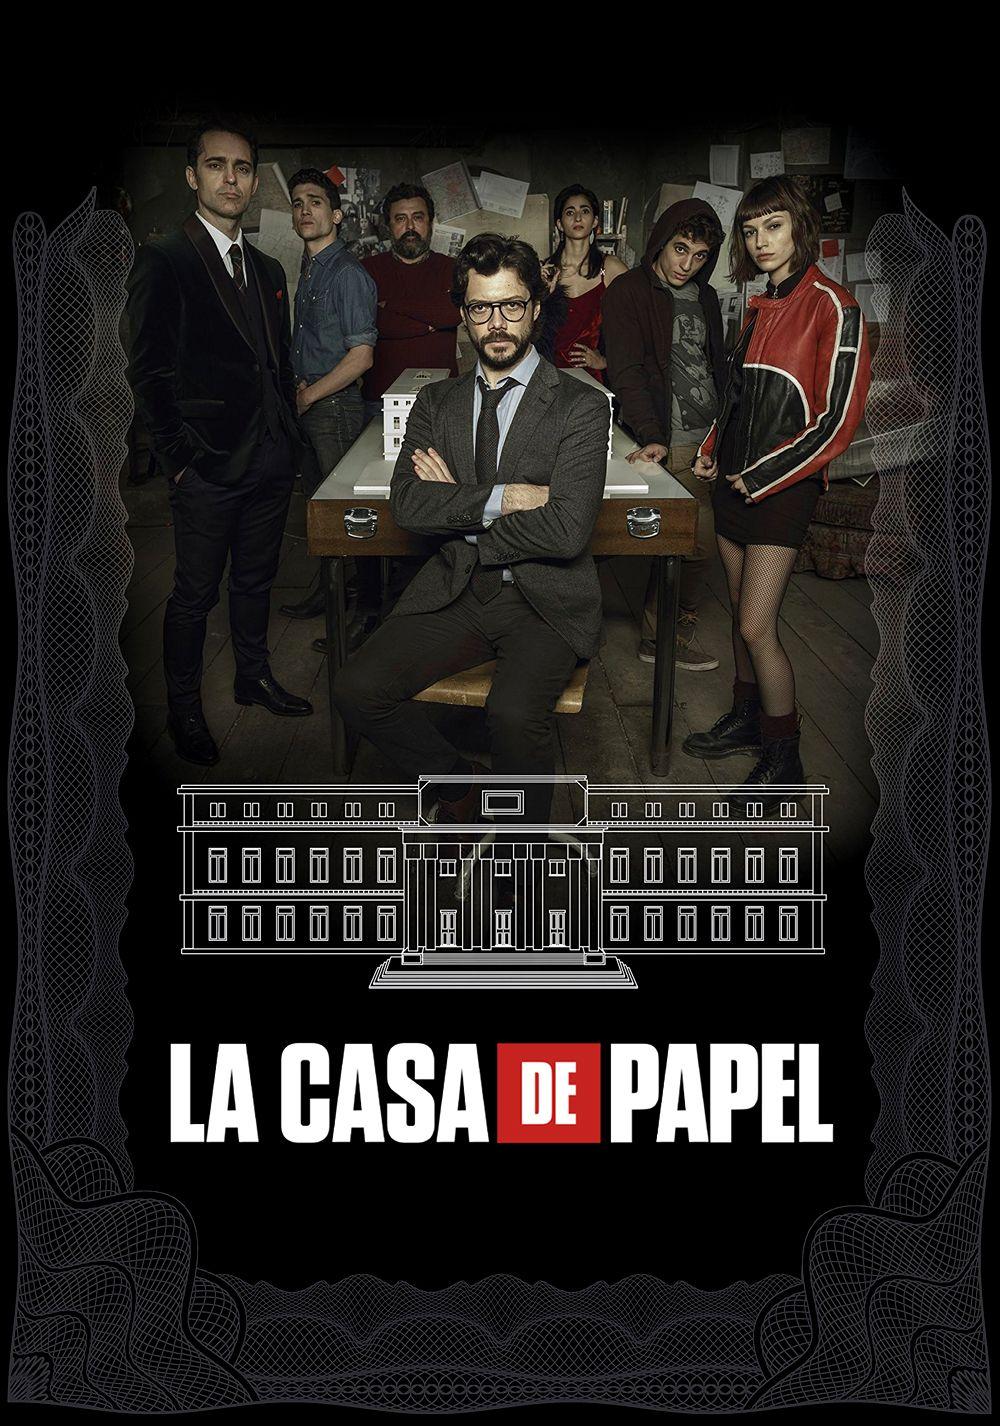 La Casa De Papel (Money Heist) Wallpaper